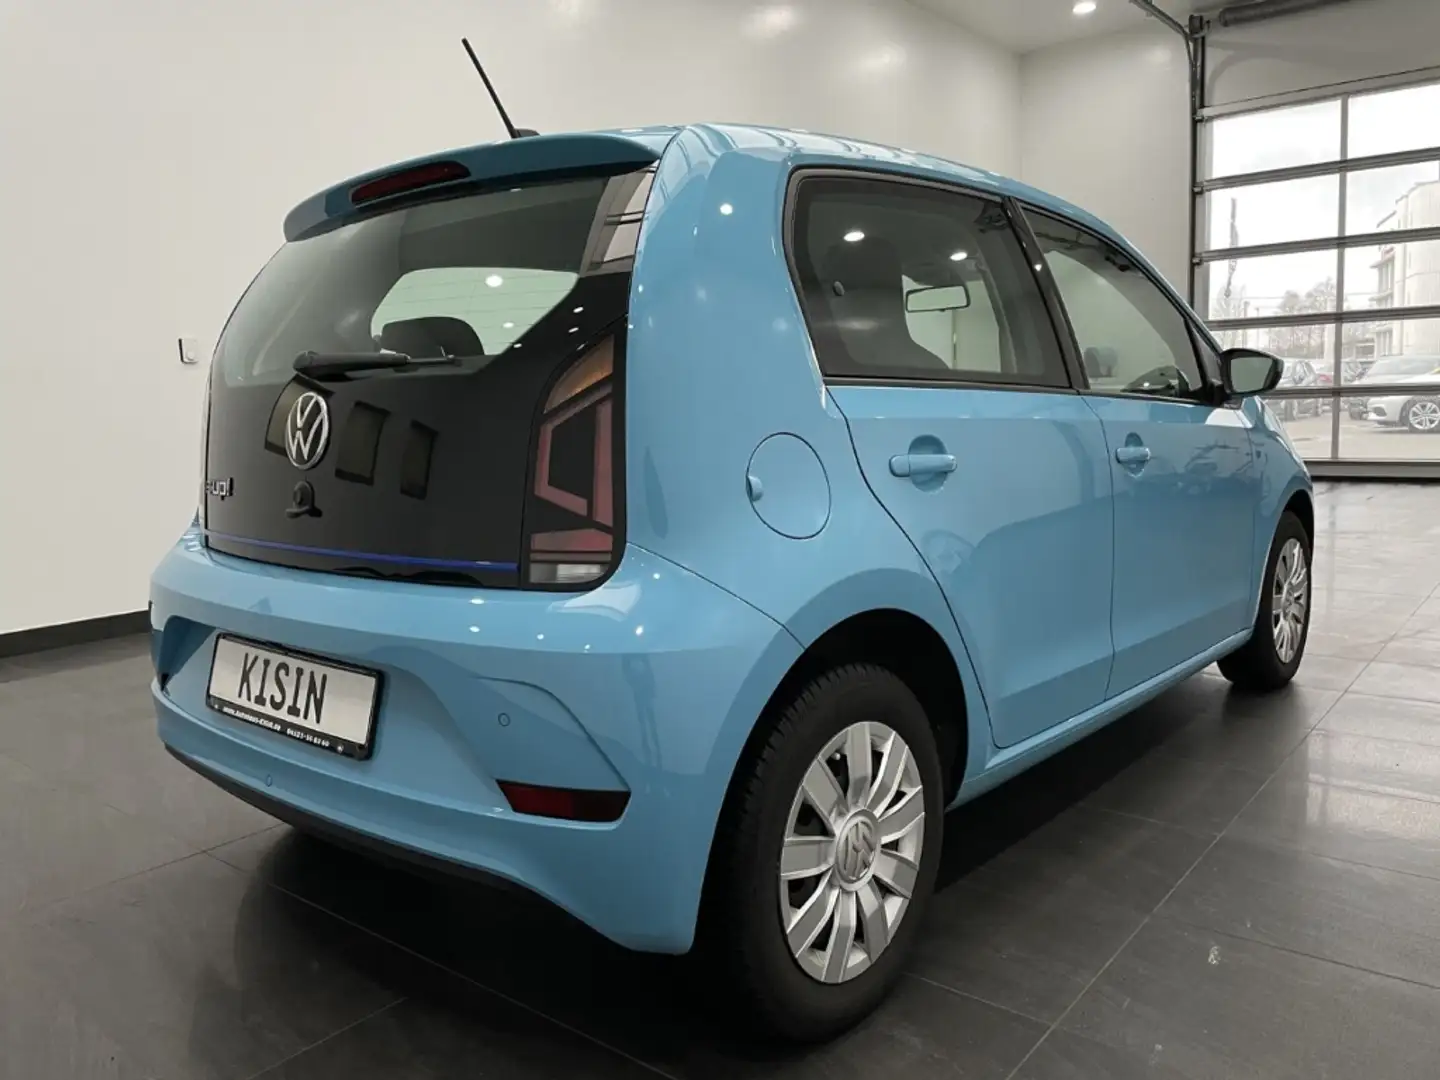 Volkswagen up! Limousine in Blau gebraucht in Neumünster für